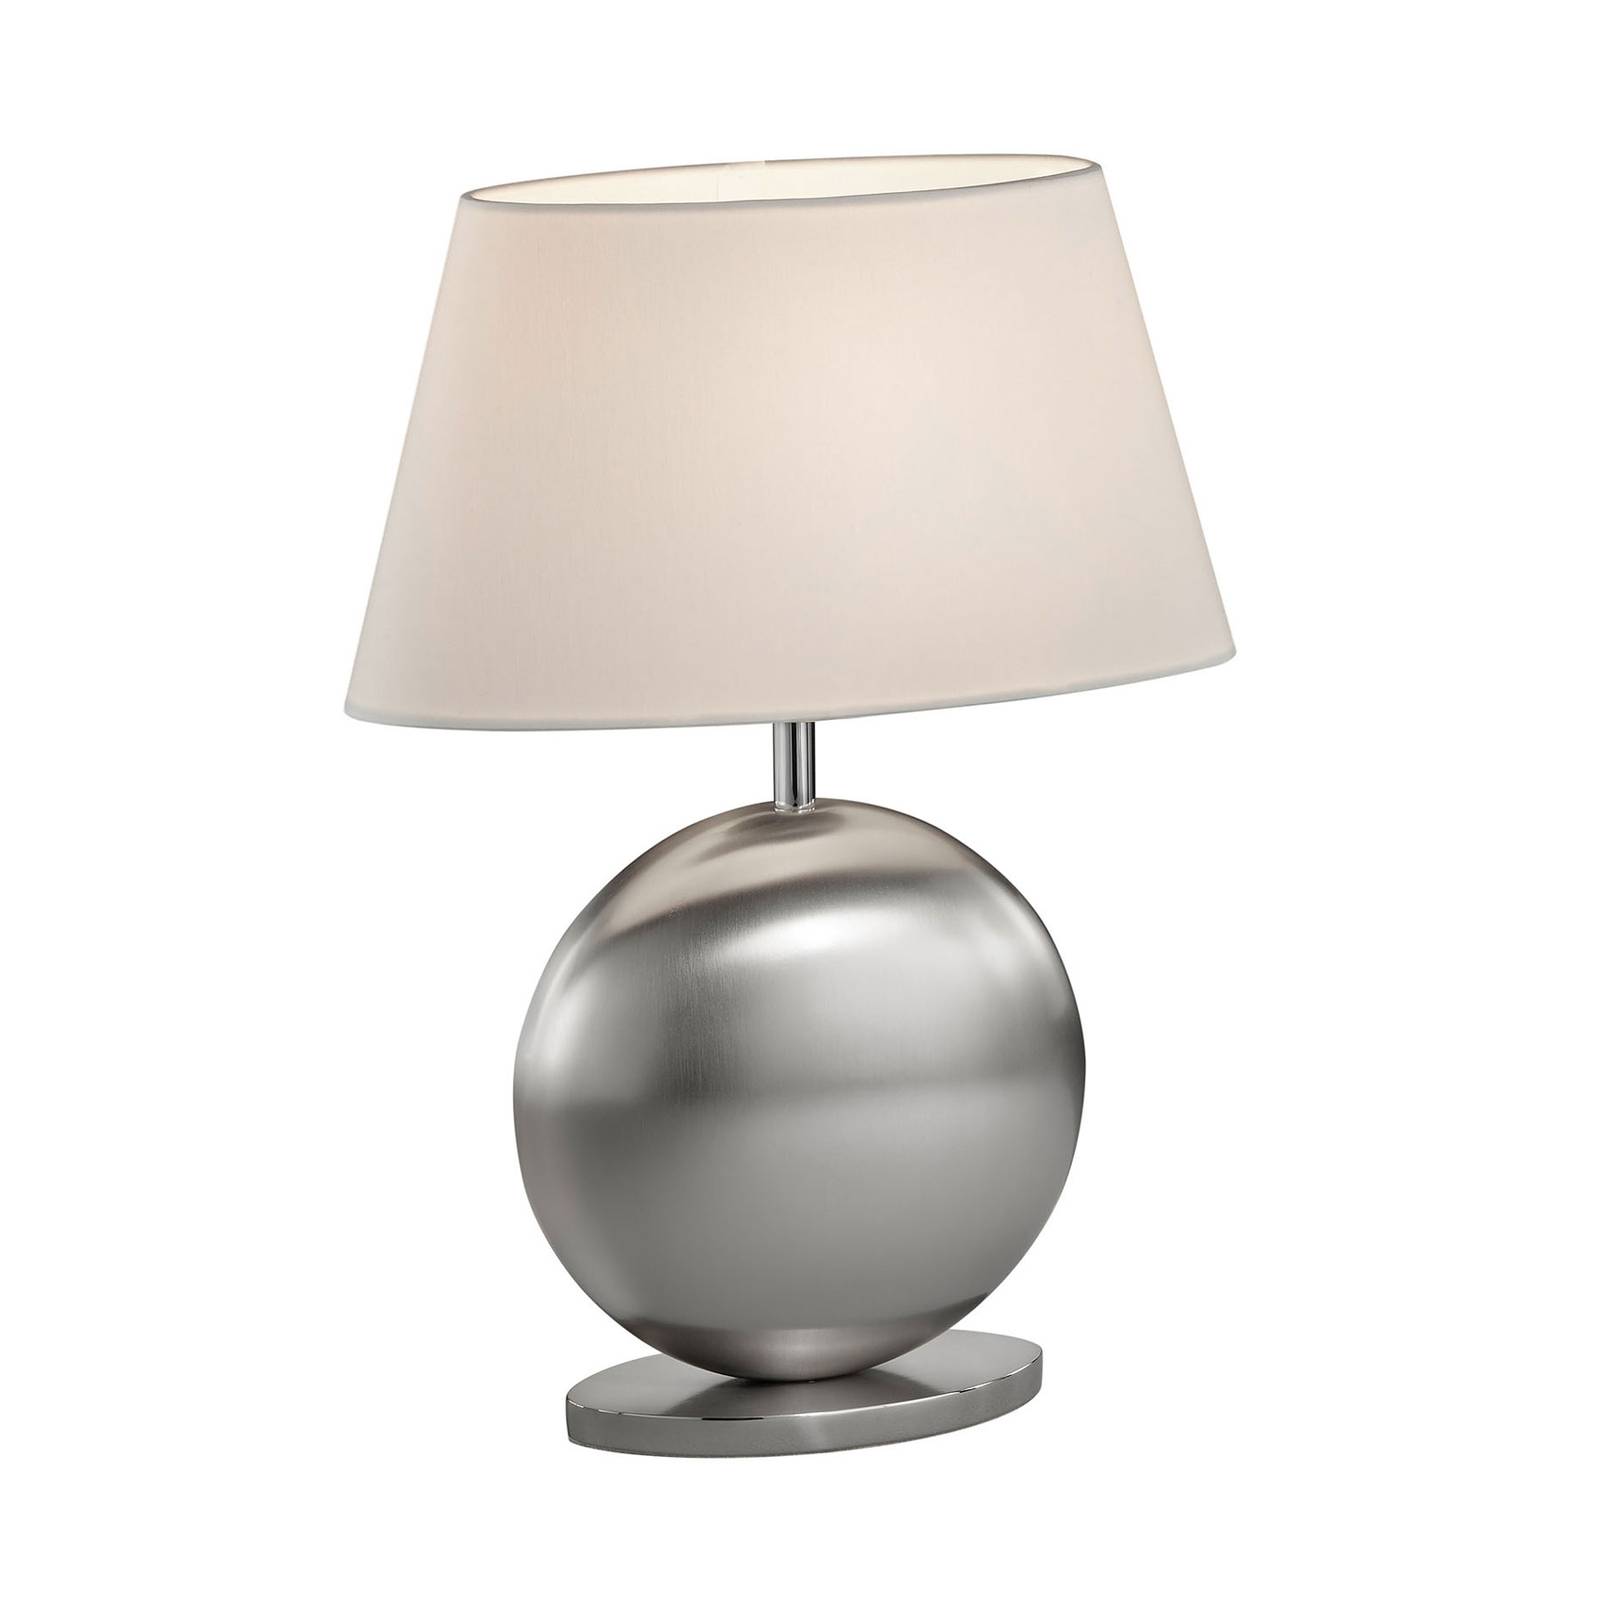 BANKAMP Asolo bordlampe hvid/nikkel, højde 41cm